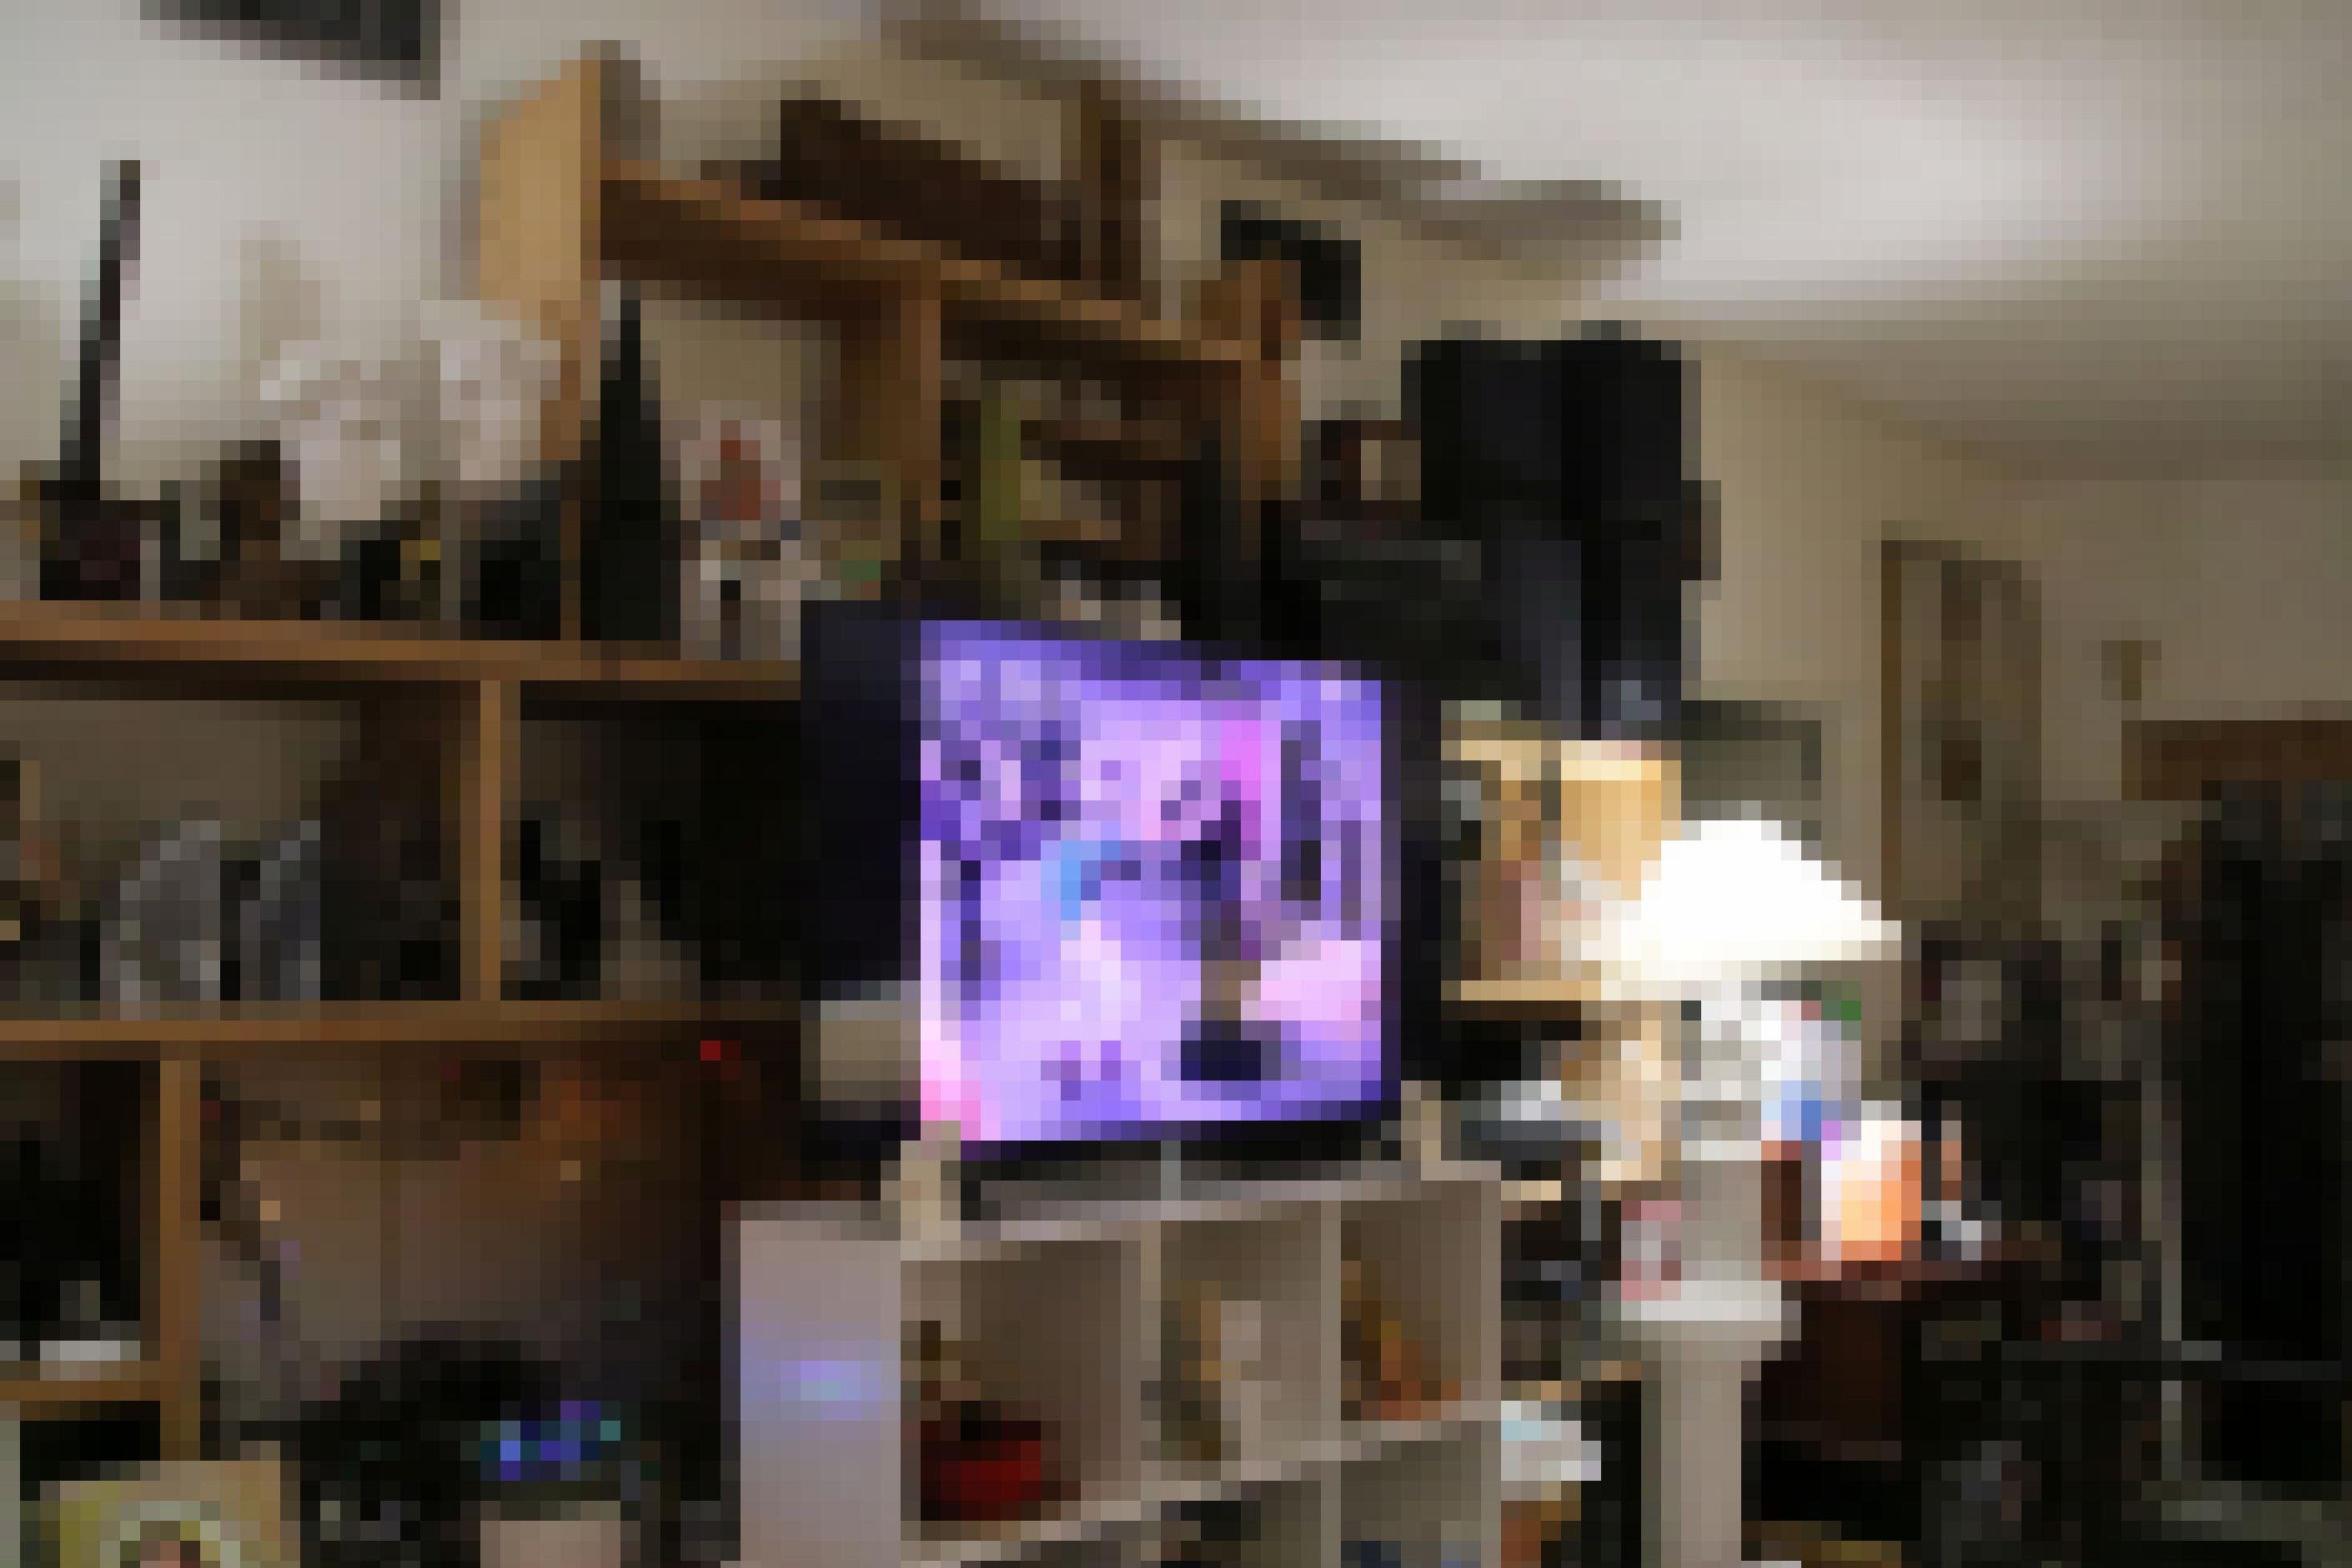 Ein Fernseher im Wohnzimmer spielt „Bonanza“ ab